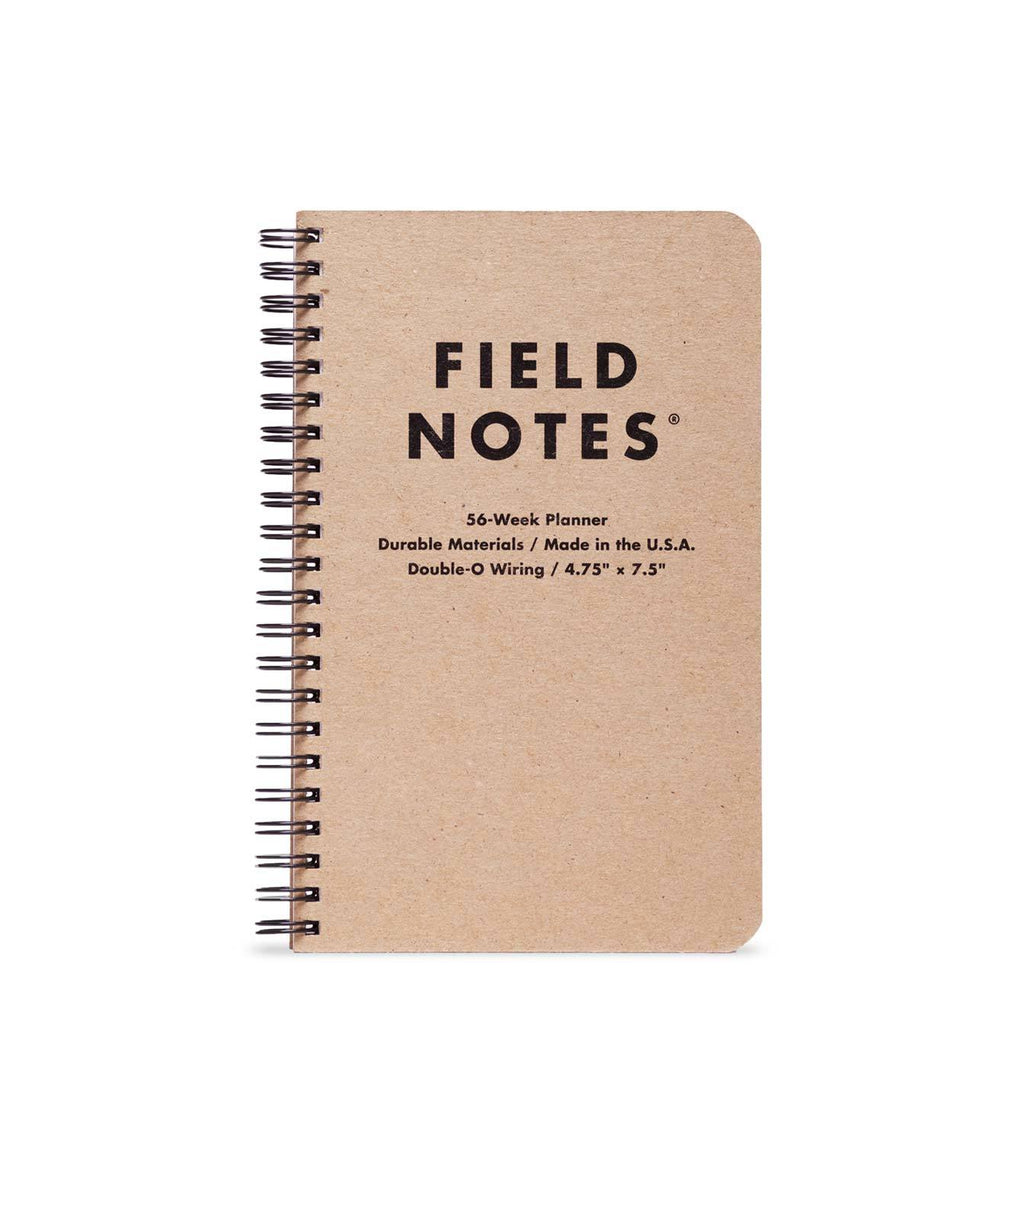 Field Notes 56 week Planner